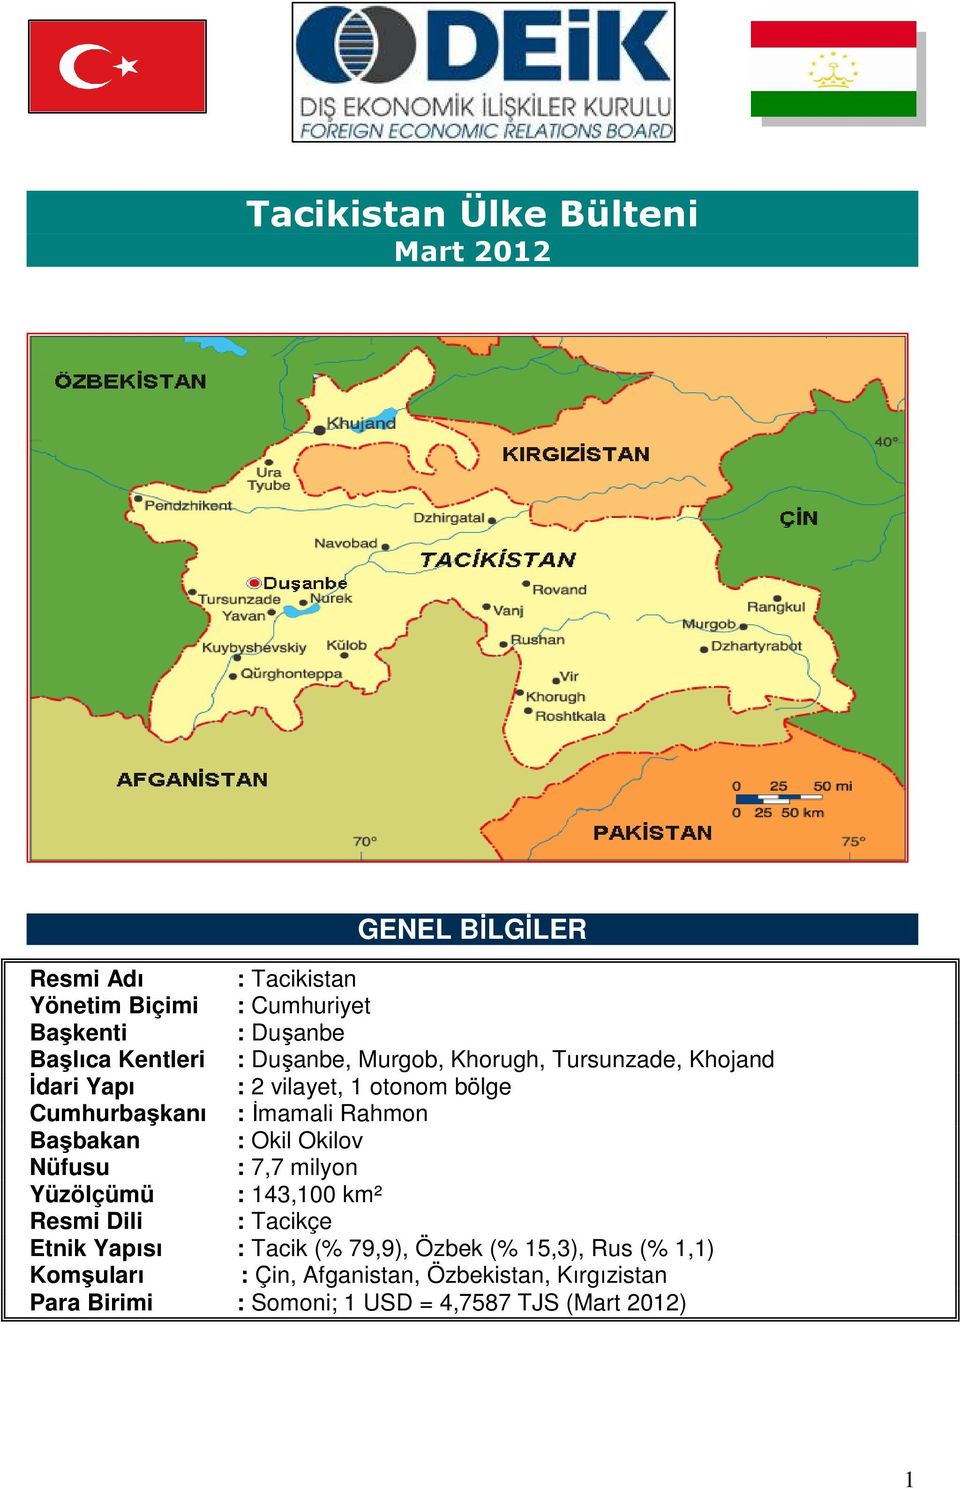 Başbakan : Okil Okilov Nüfusu : 7,7 milyon Yüzölçümü : 143,100 km² Resmi Dili : Tacikçe Etnik Yapısı : Tacik (% 79,9), Özbek